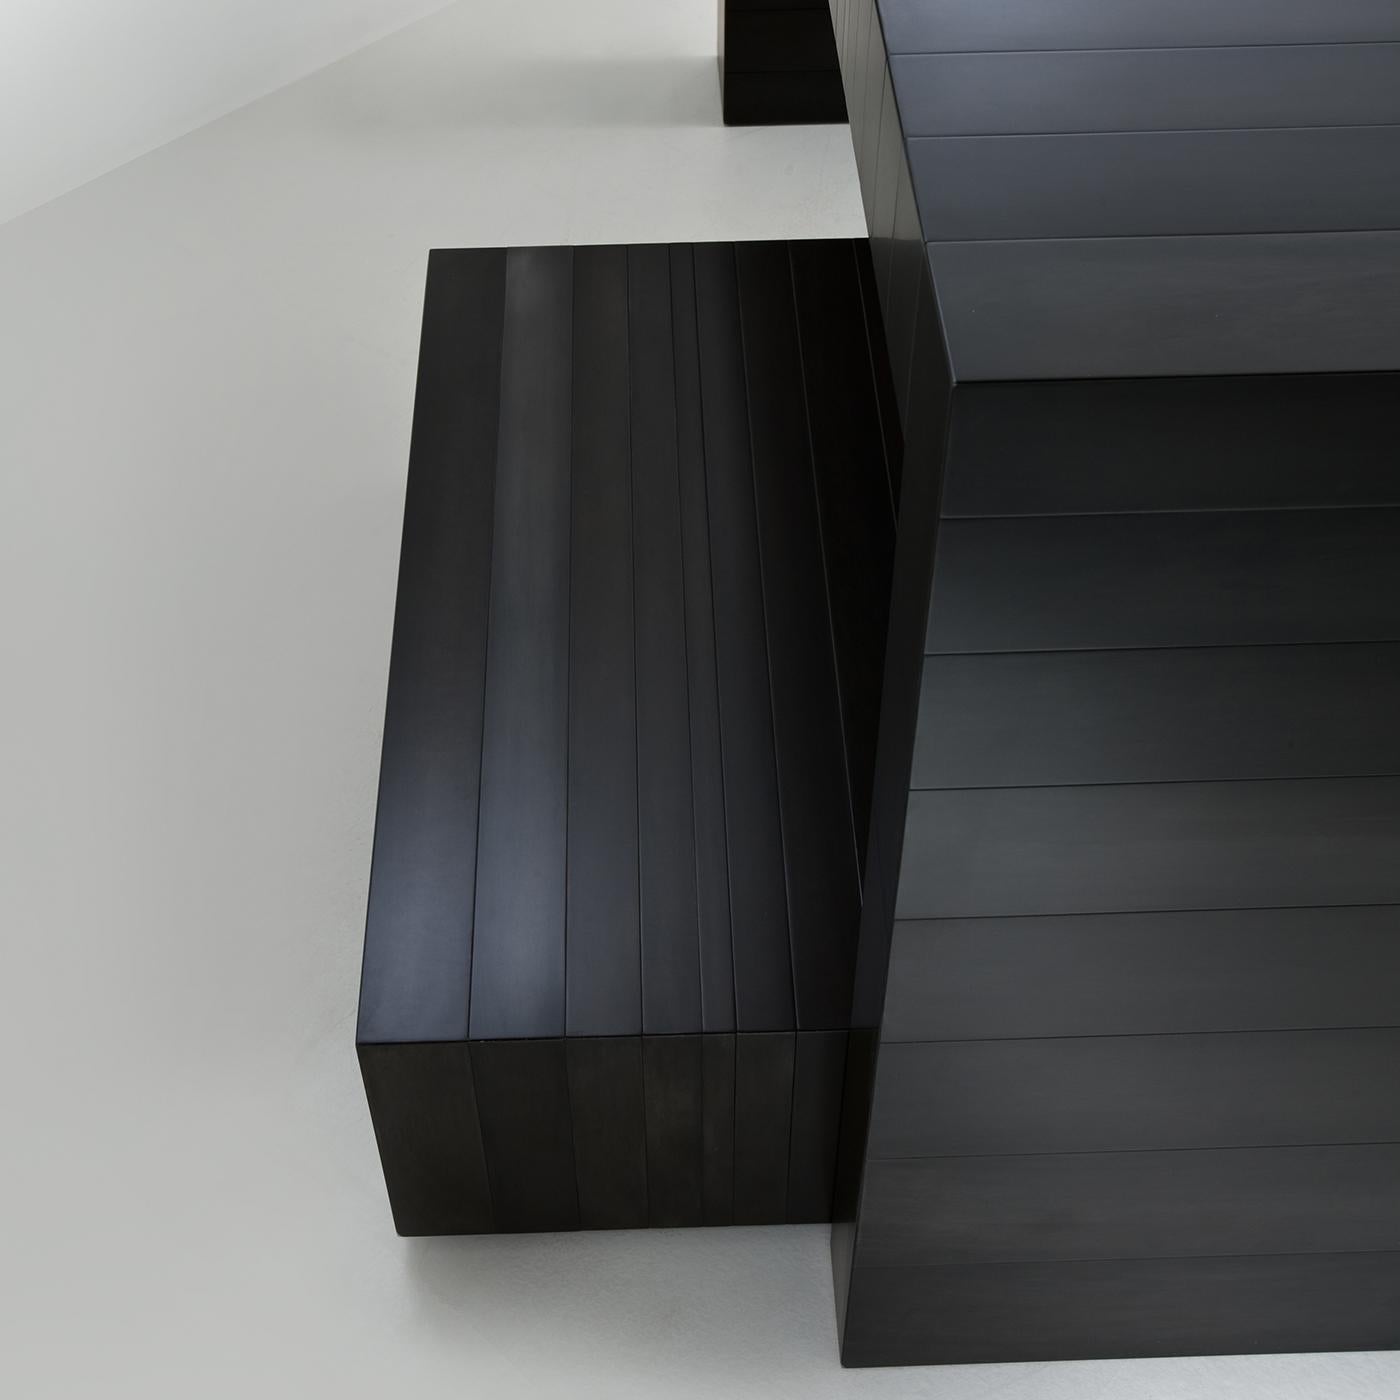 Des lignes simples traversent verticalement le dessus et les côtés de cette table de console solide et moderne, lui donnant du mouvement et un look moderne. Les côtés et le dessus de cette pièce sont entièrement réalisés en métal noir, et